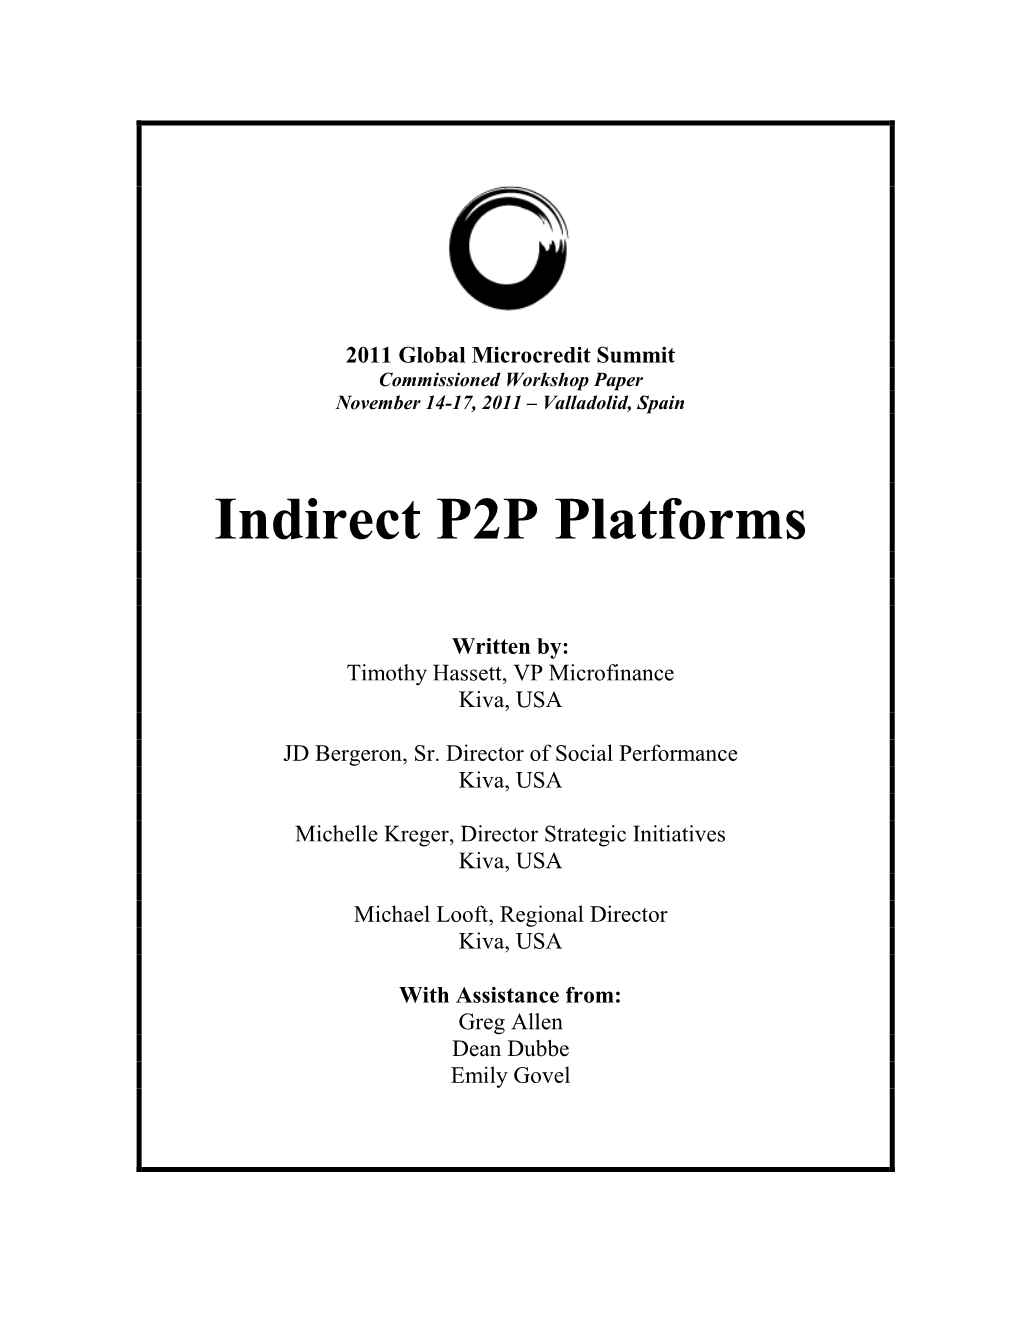 Indirect P2P Platforms